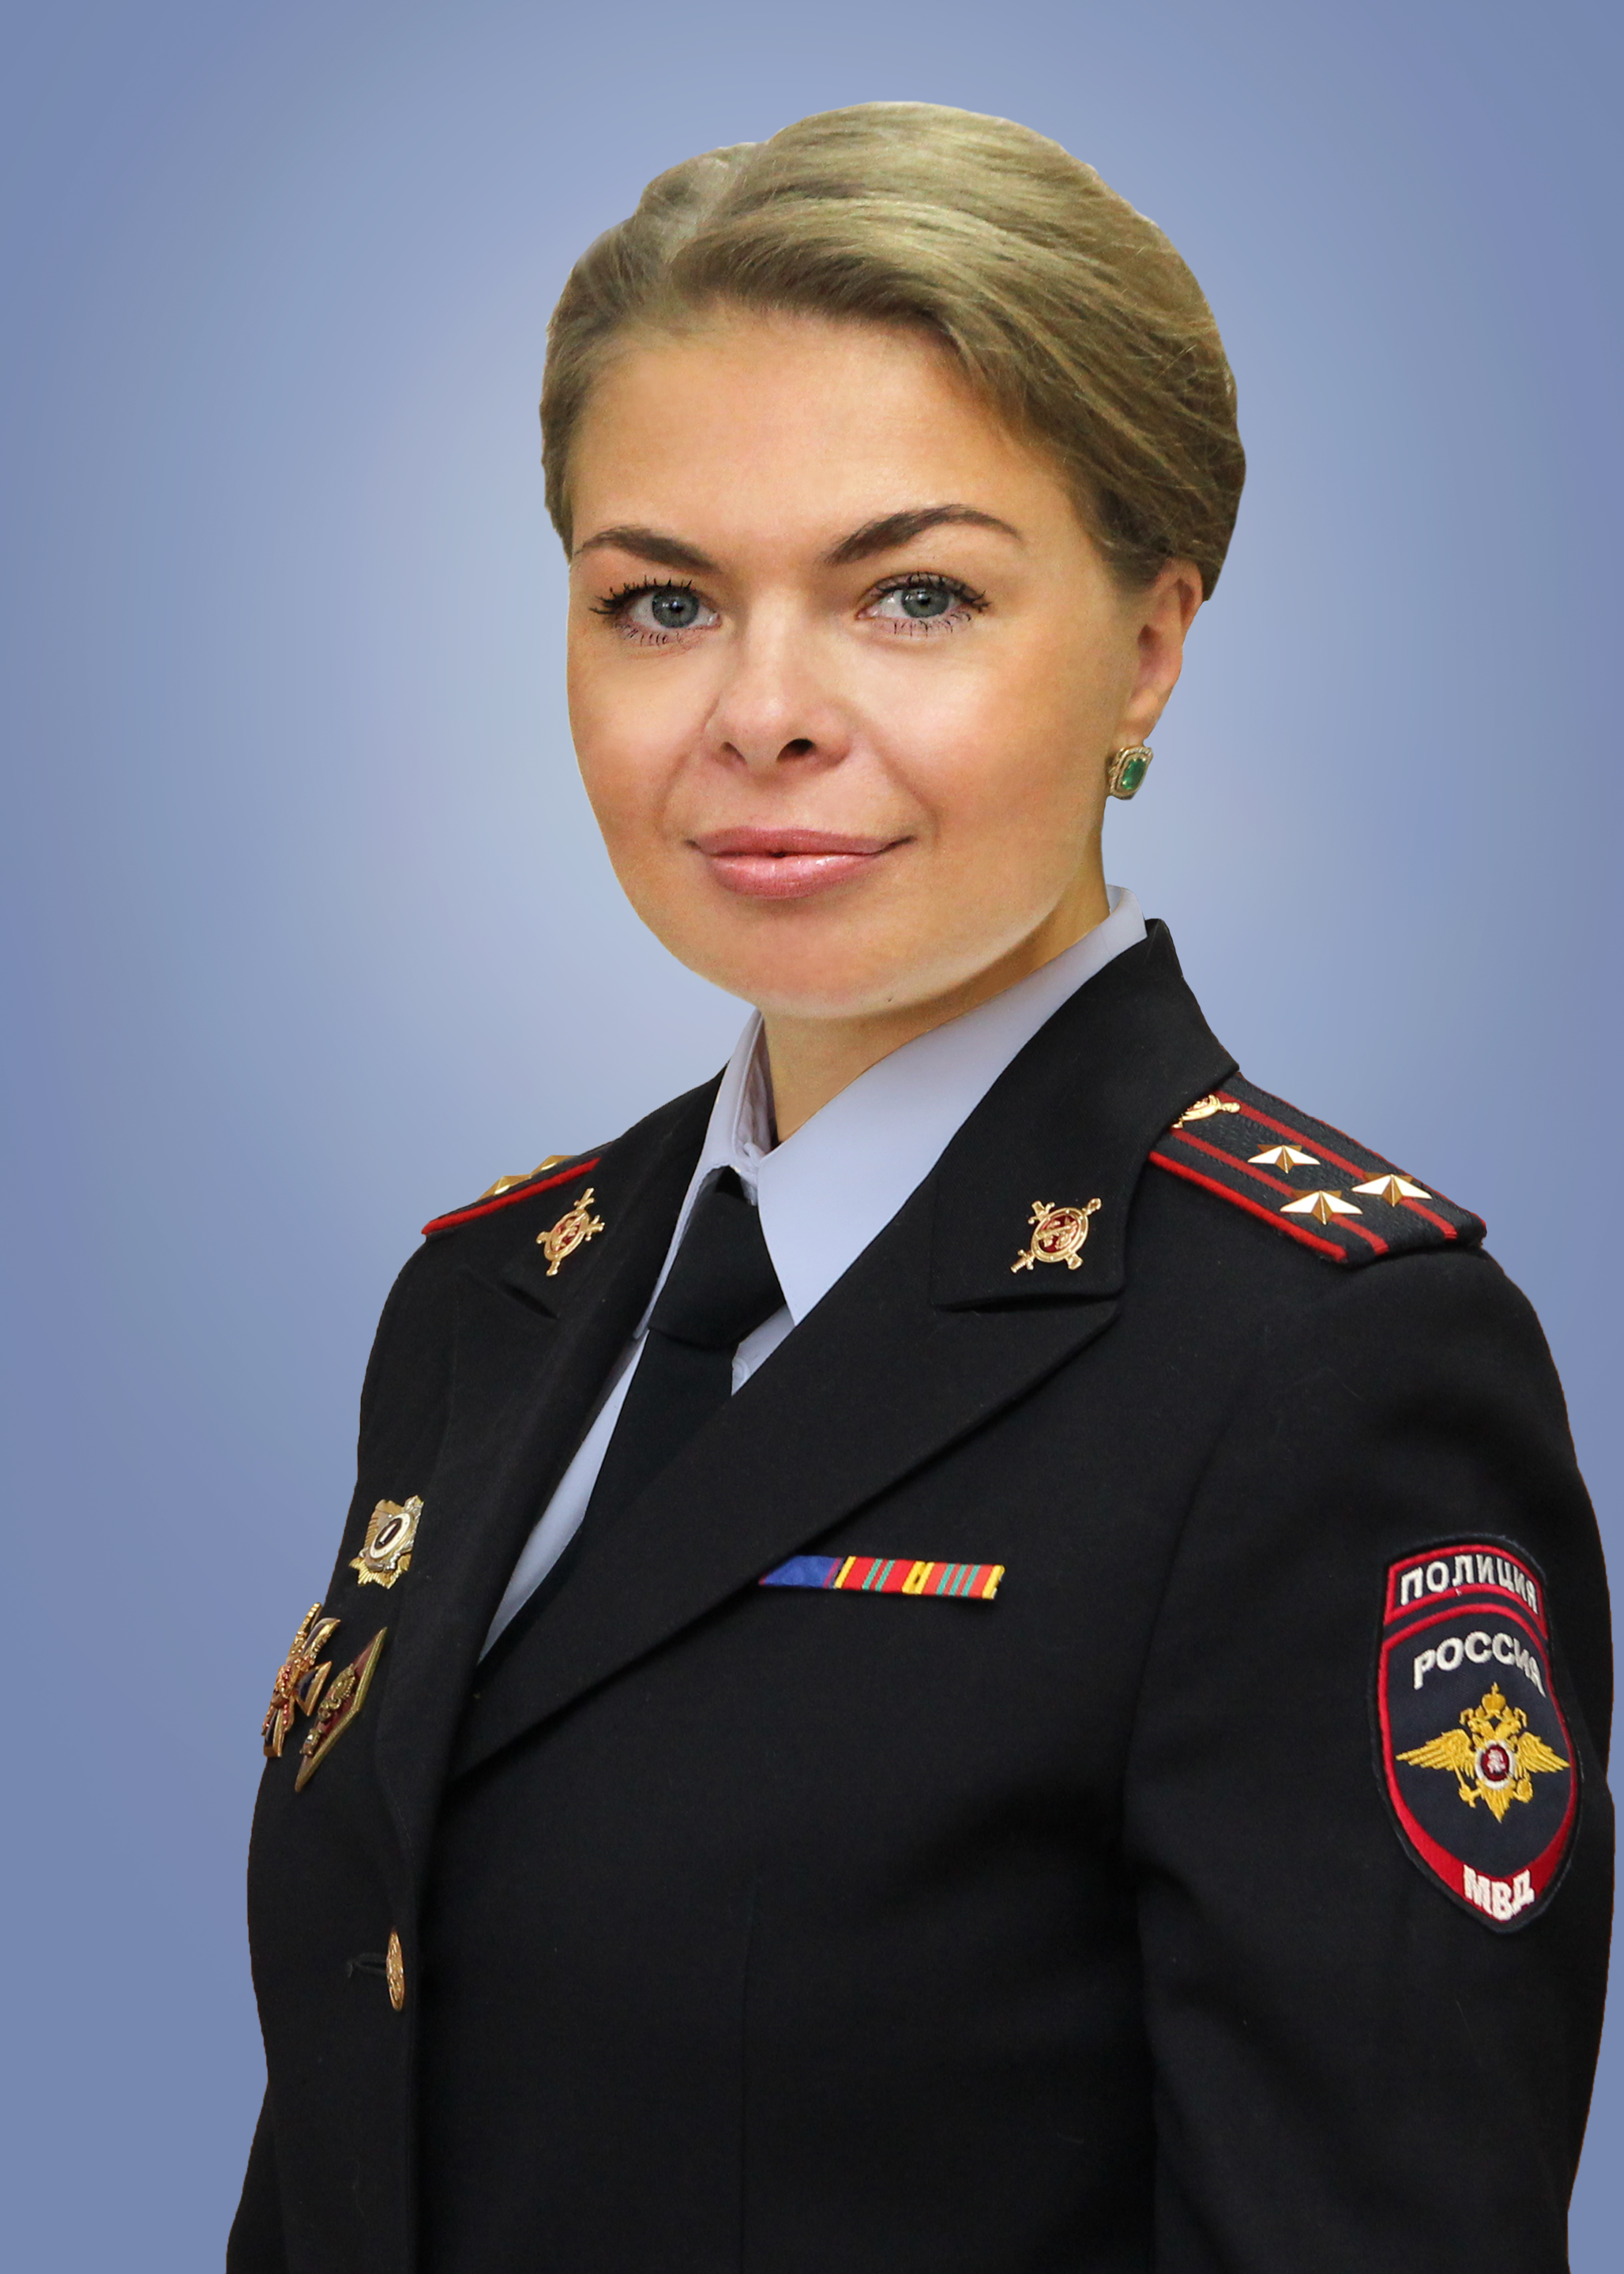                         Demidova-Petrova Elizaveta
            